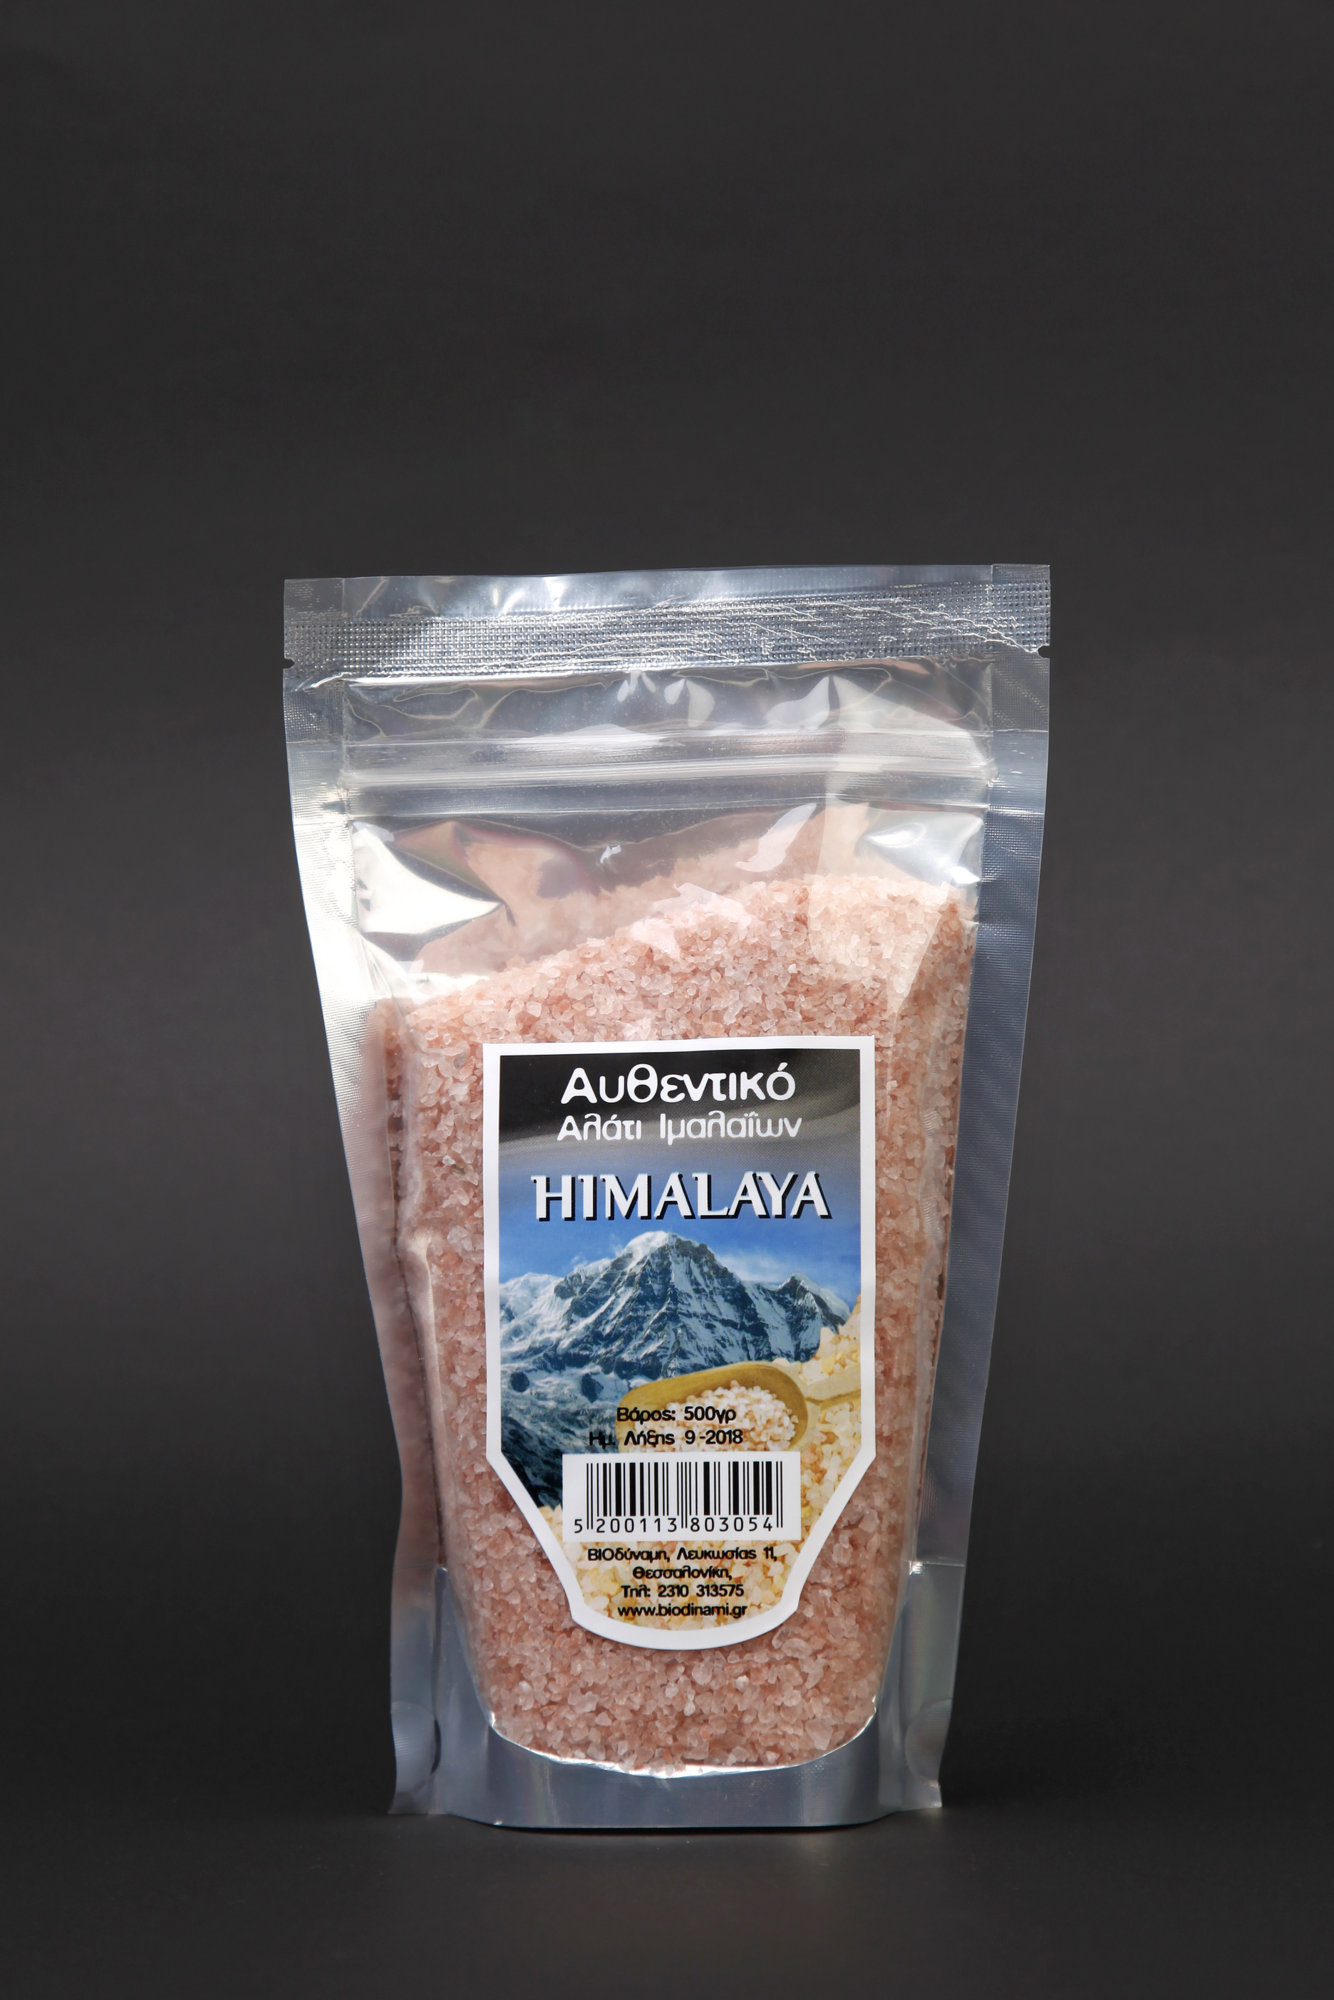 Himalayan salts